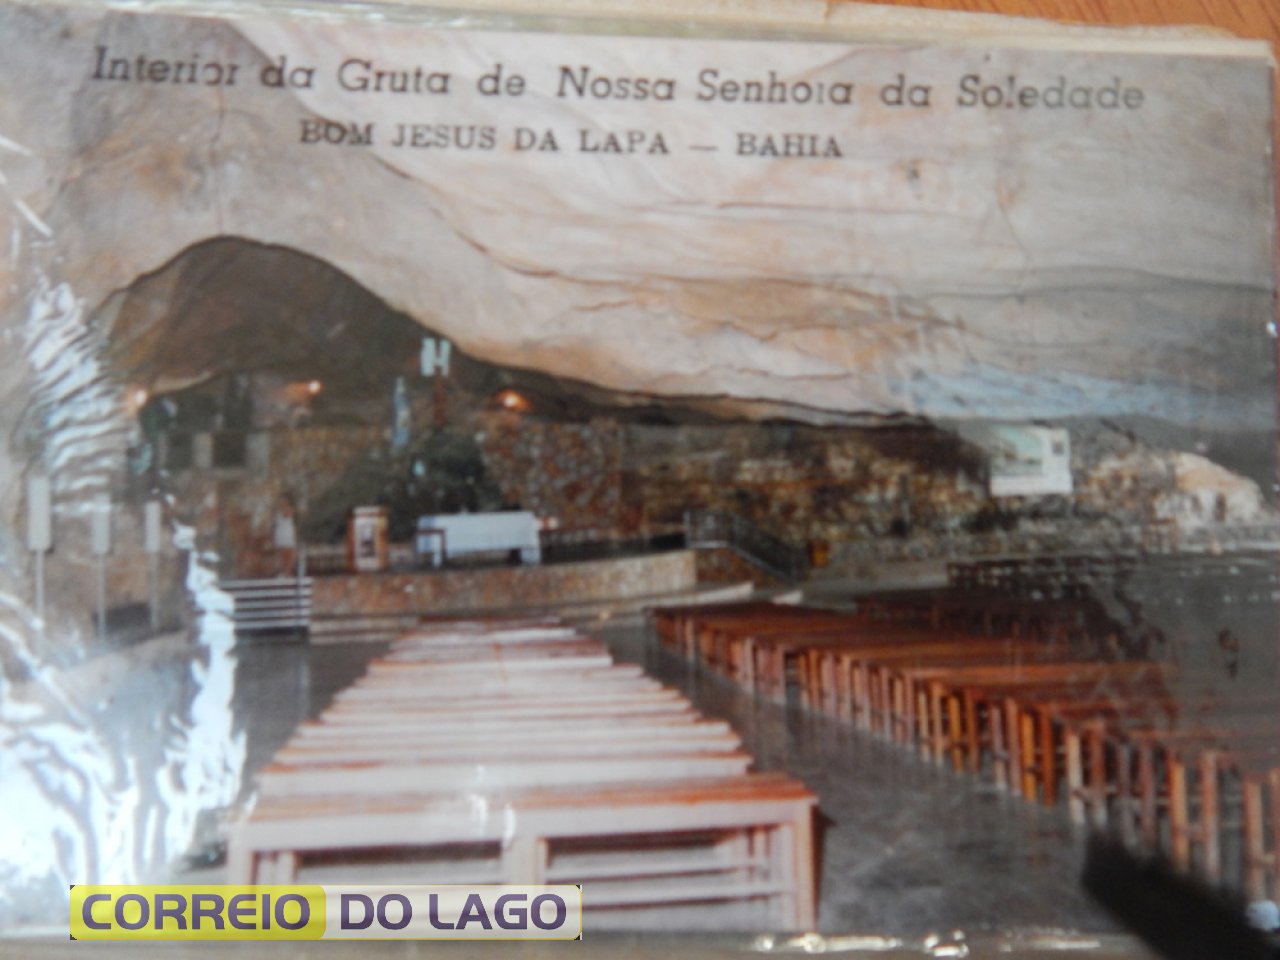 Freno em visita a gruta em que está a Igreja- Bom Jesus da Lapa Bahia. Década de 1990.